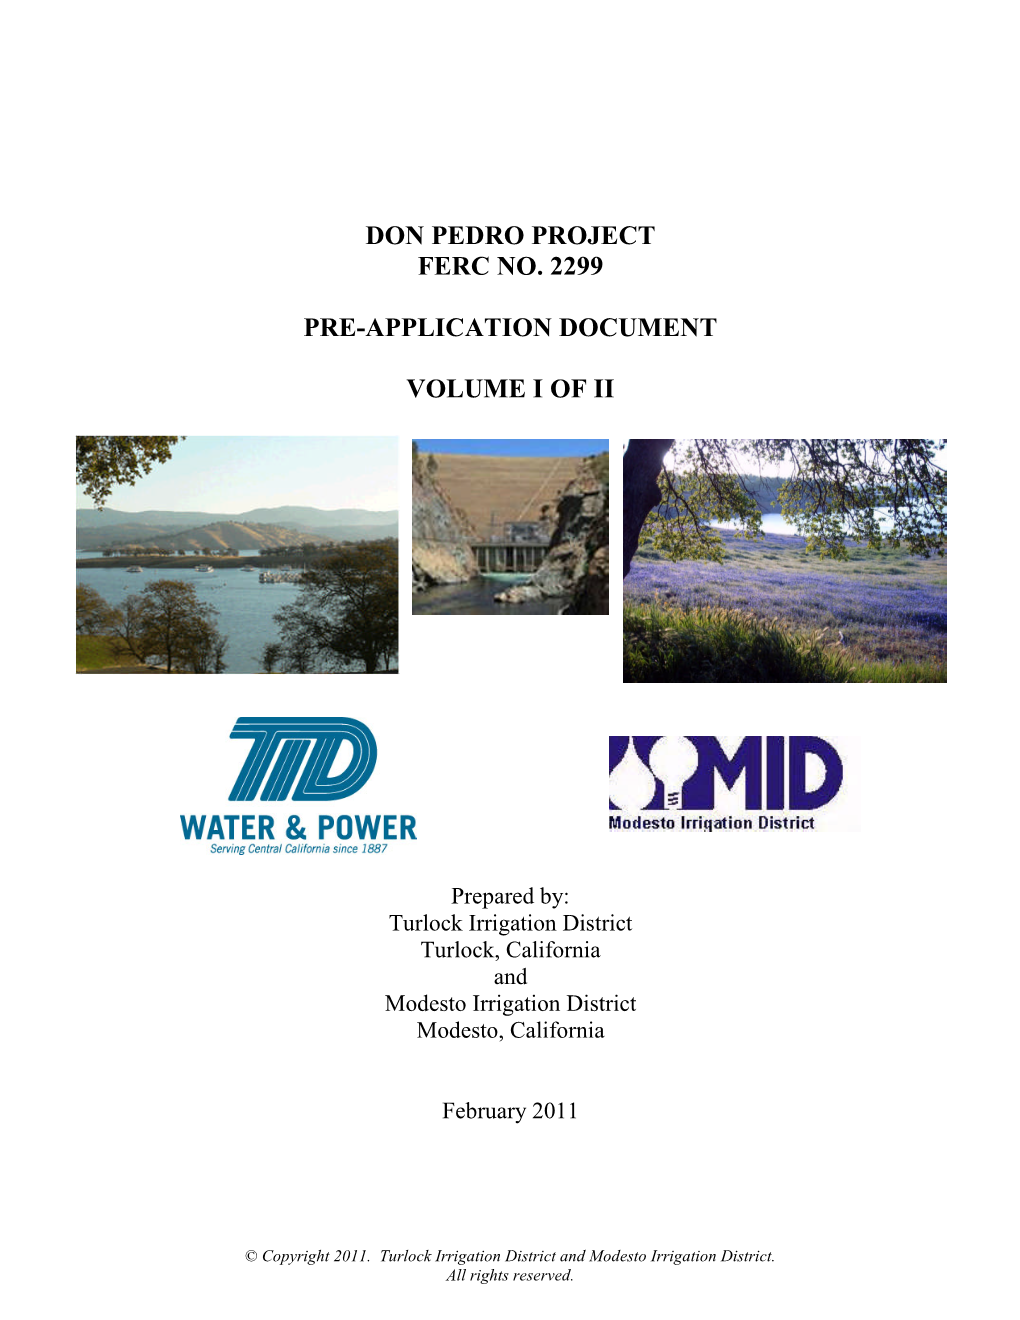 Don Pedro Project Ferc No. 2299 Pre-Application